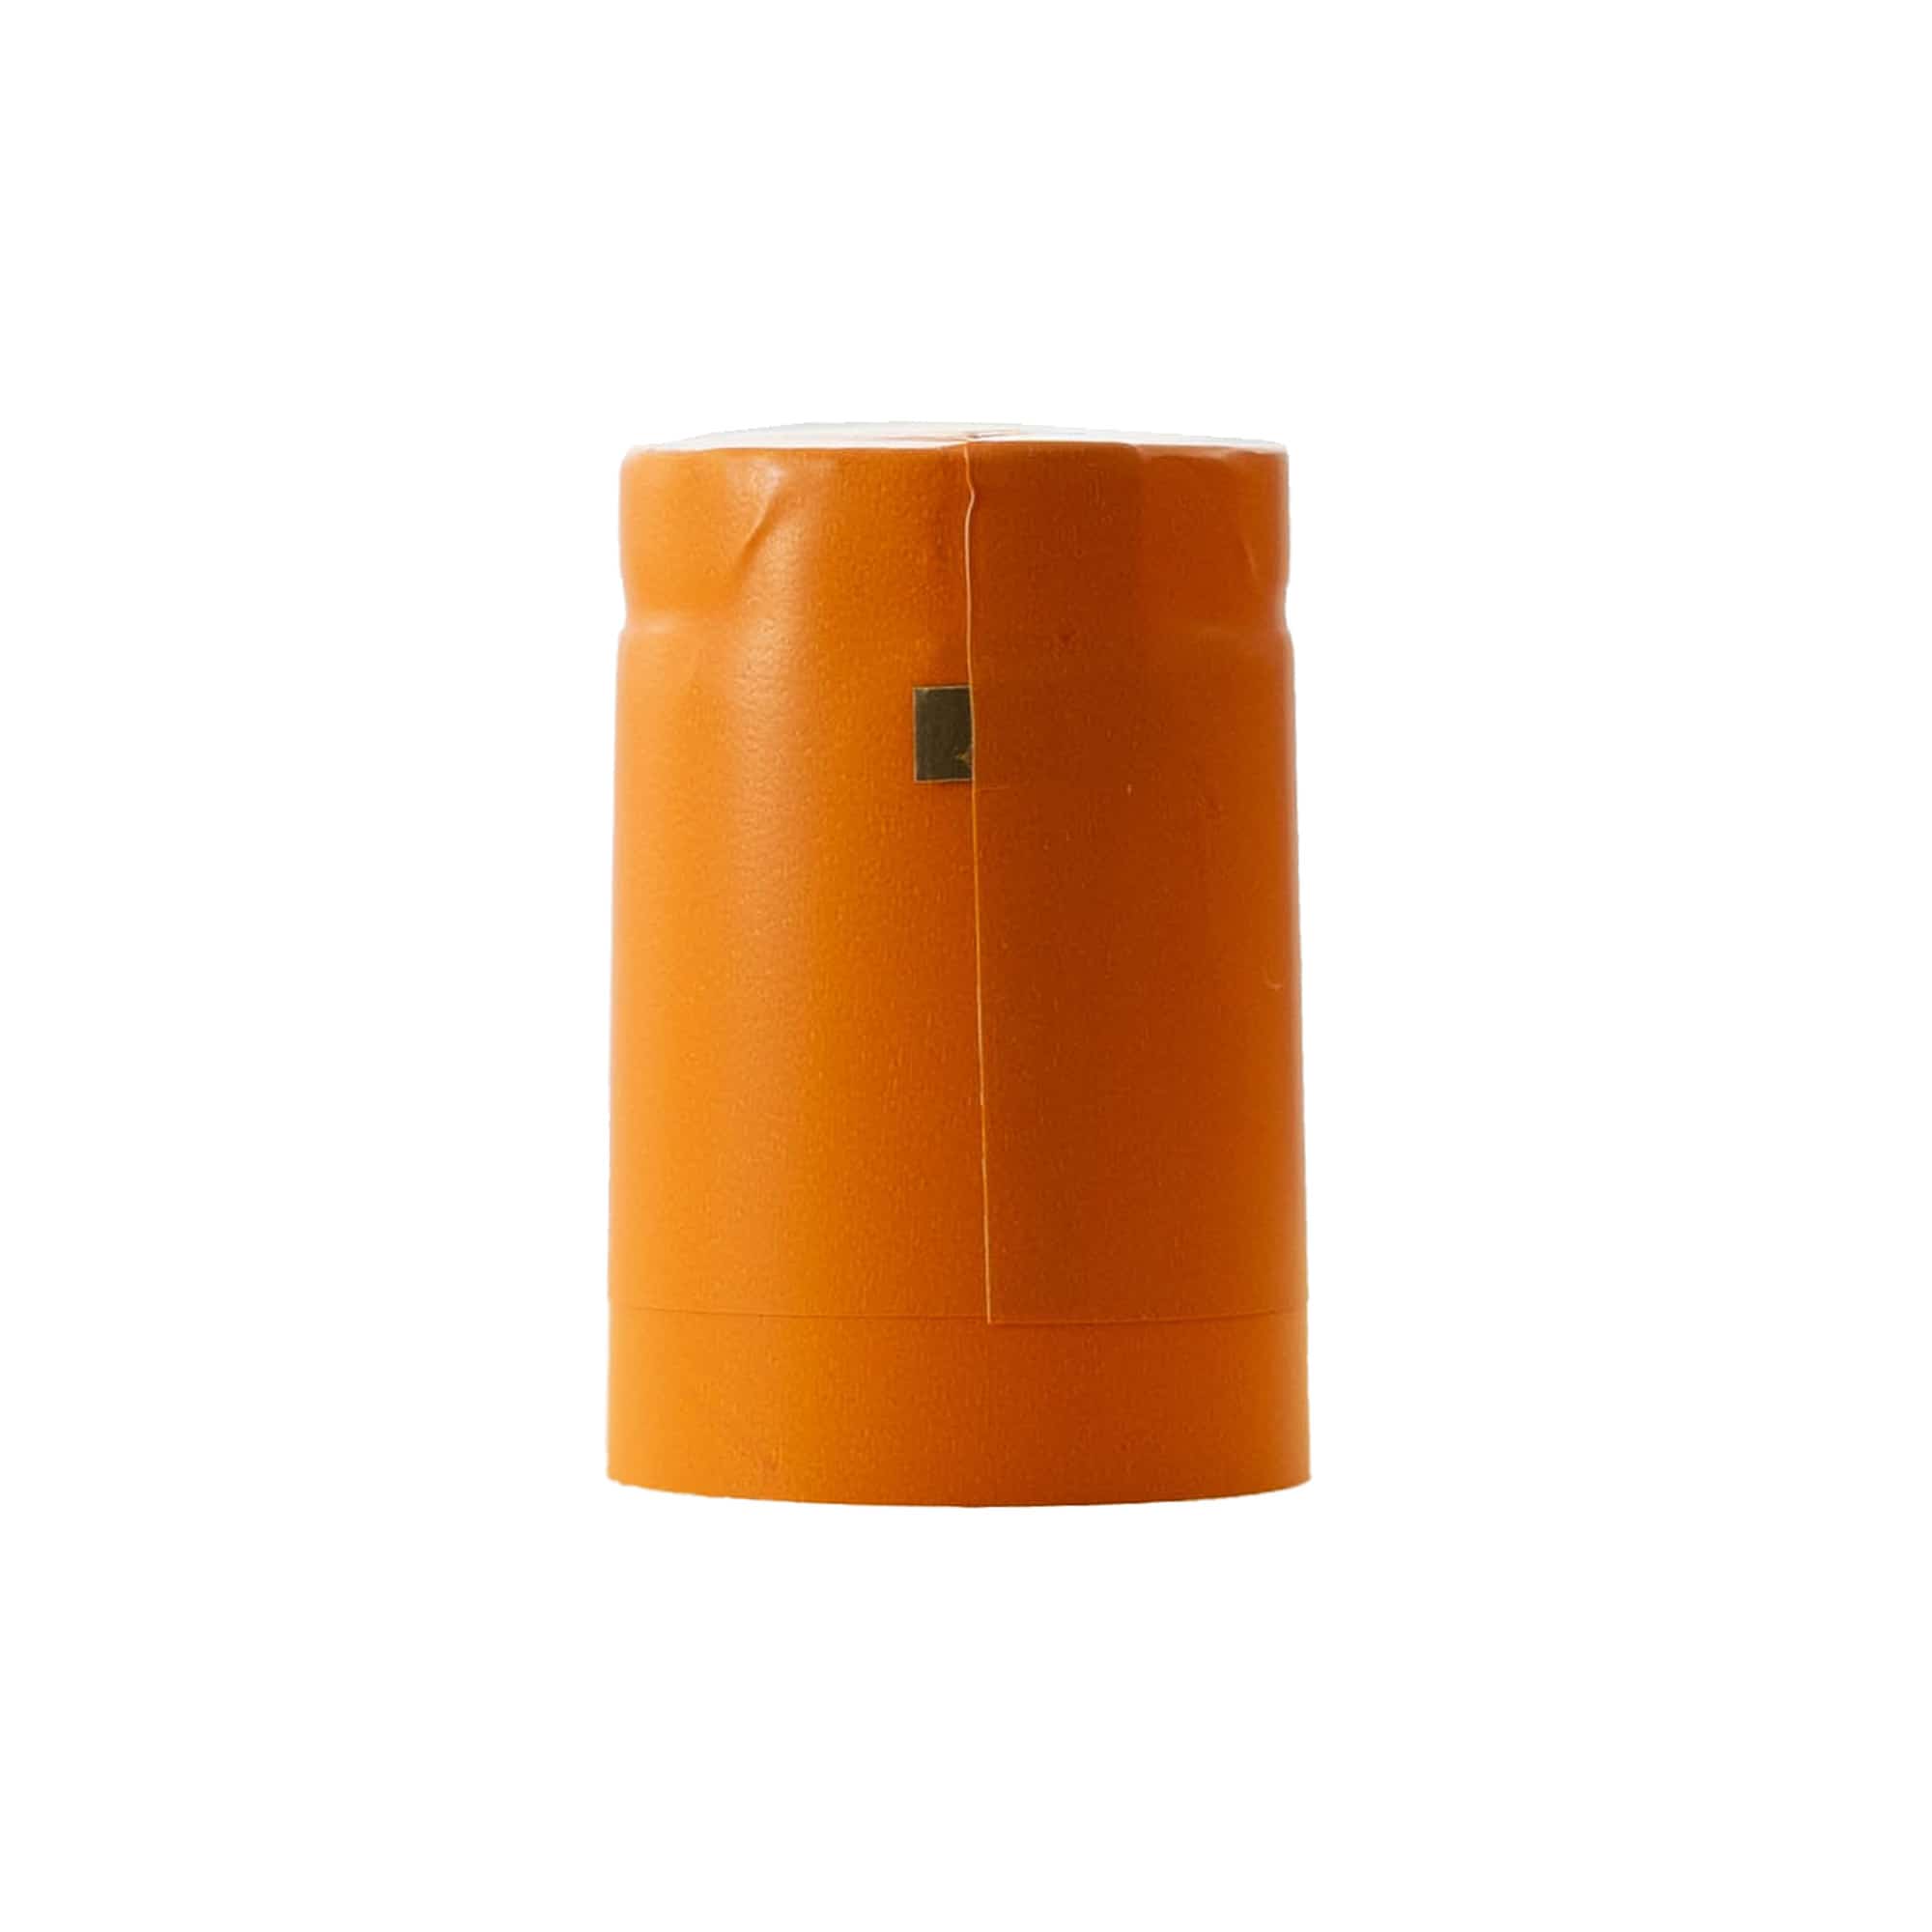 Capsule thermo-rétractable 32x41, plastique PVC, orange